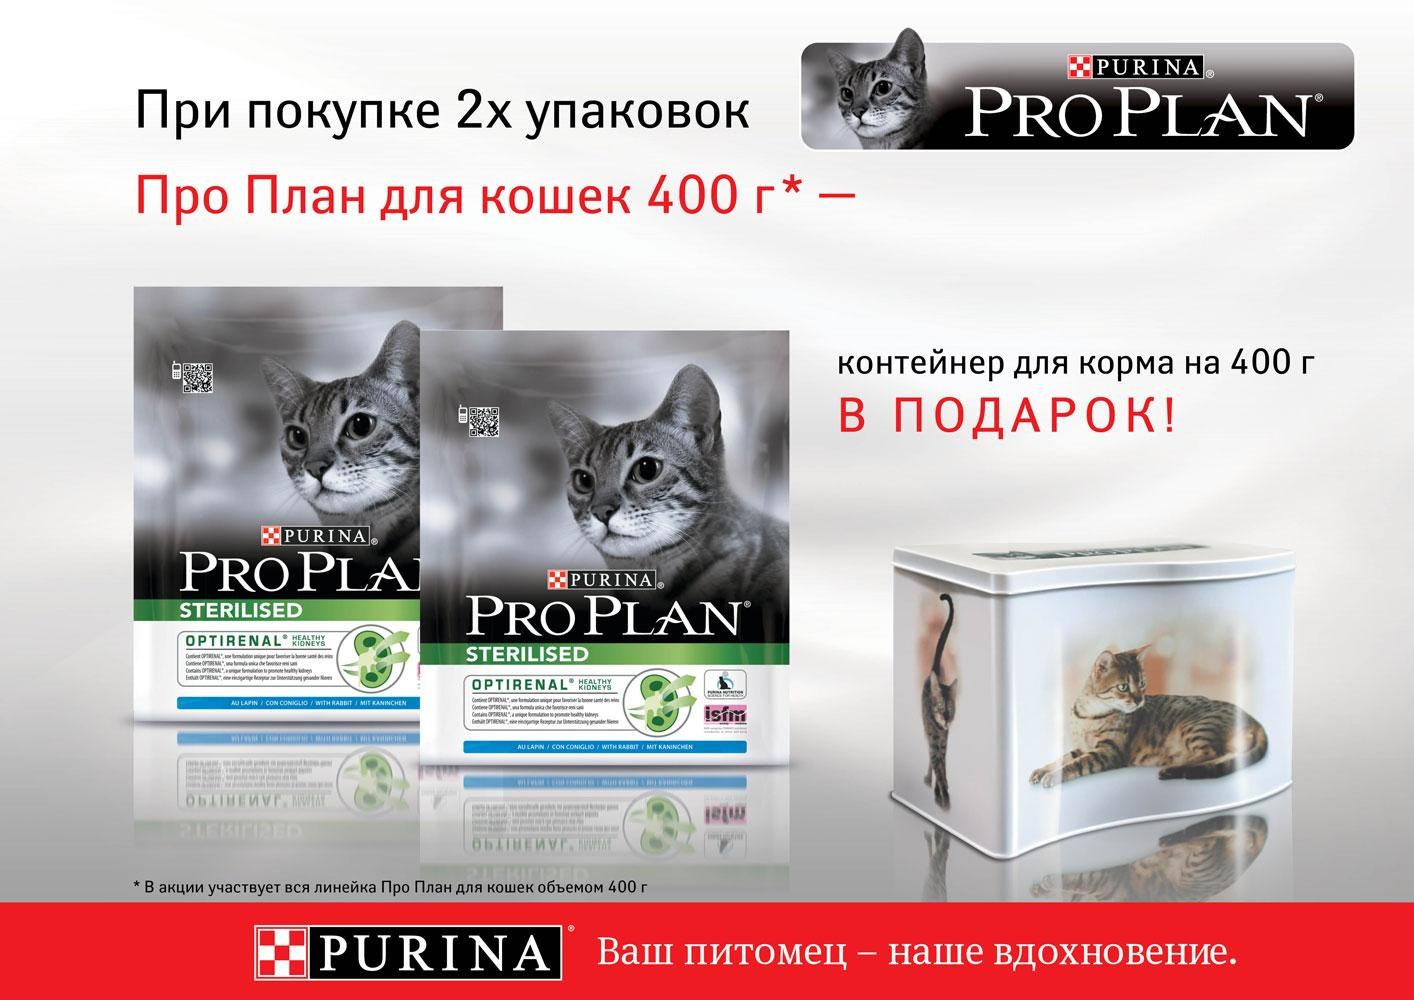 Пропал pro plan live. Purina Pro Plan корм Purina Pro Plan. Корма для кошек Пурина Проплан. Purina Pro Plan баннер. Пурина про план для кошек.